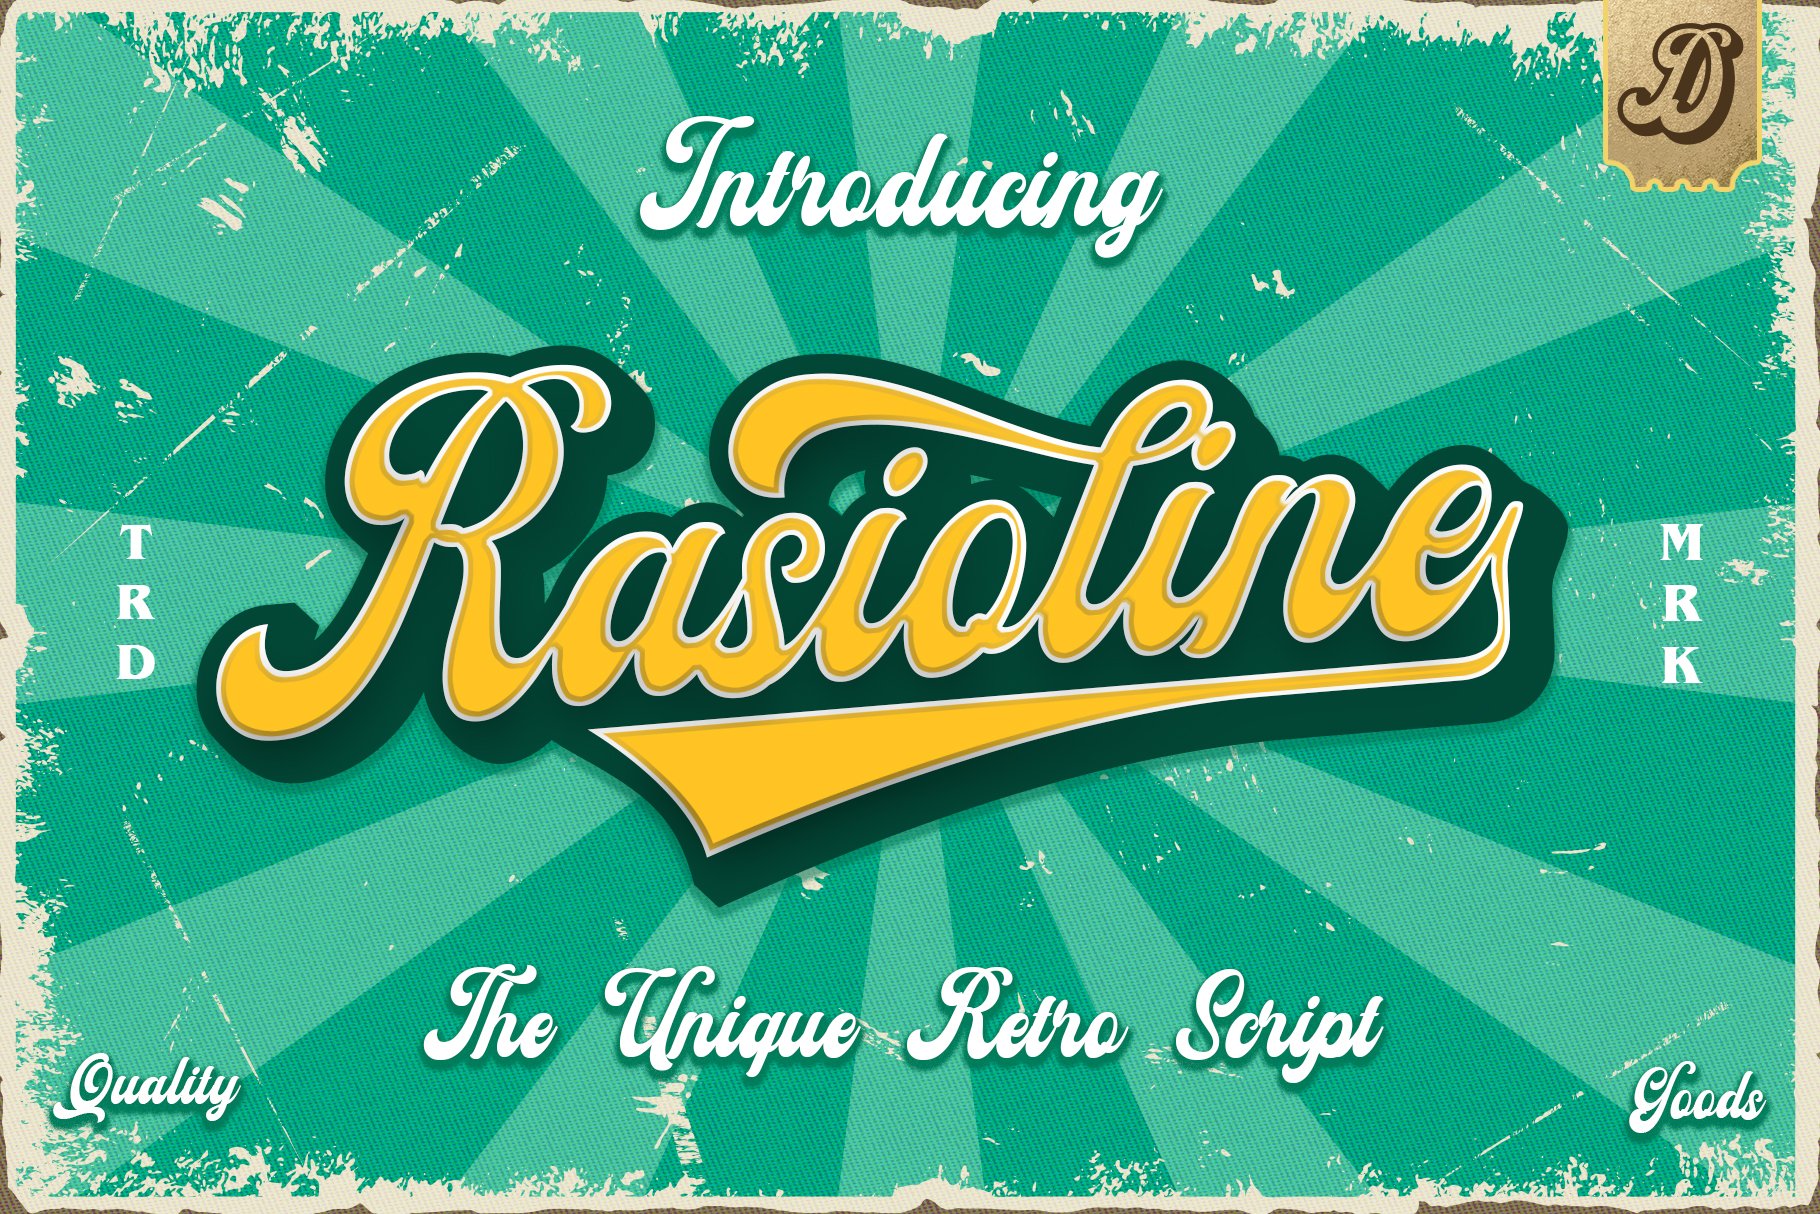 Rasioline retro script font cover image.